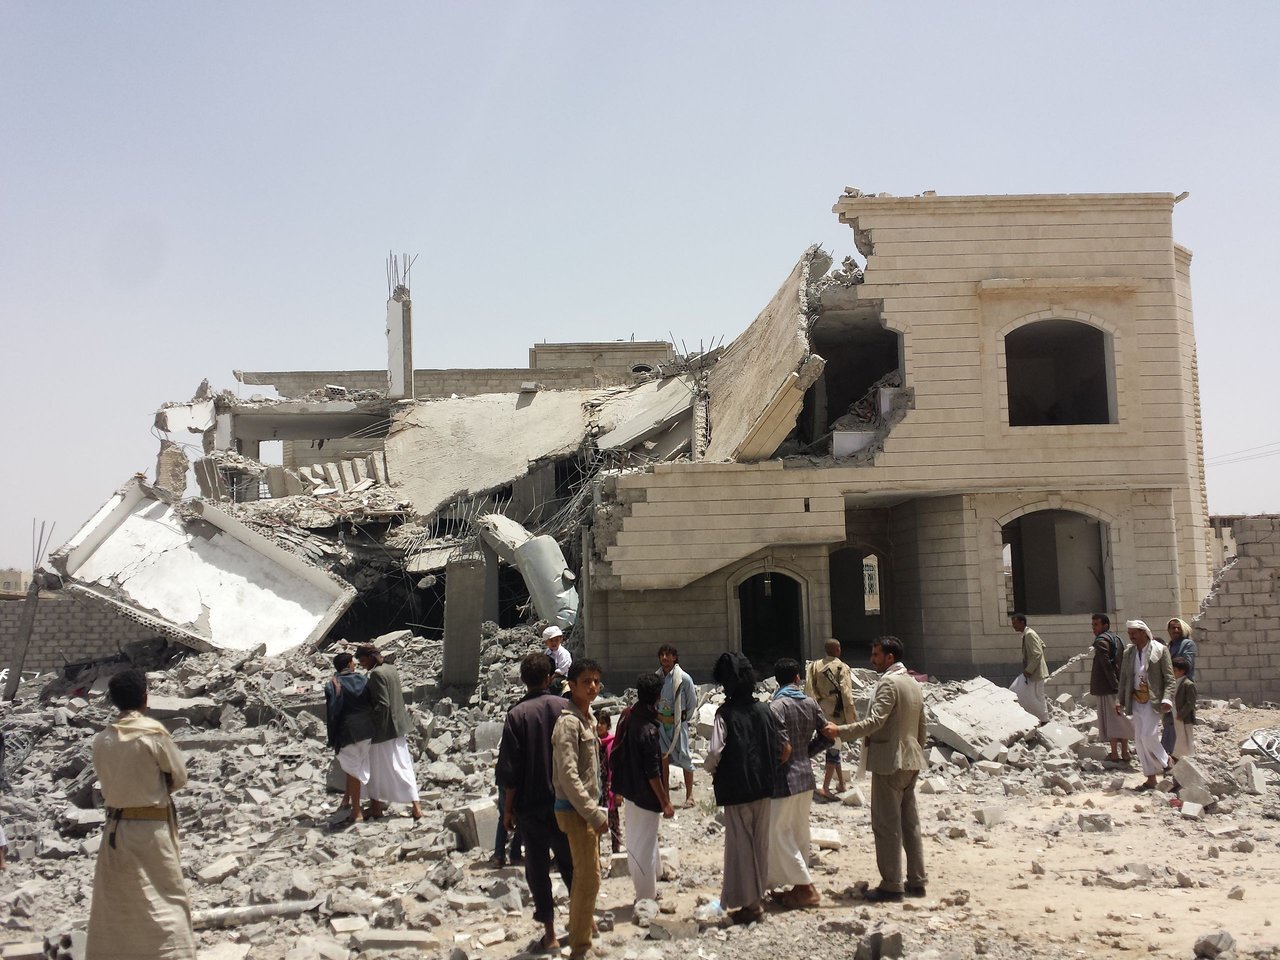 Elpusztult ház Jemenben - Fotó: Wikipedia